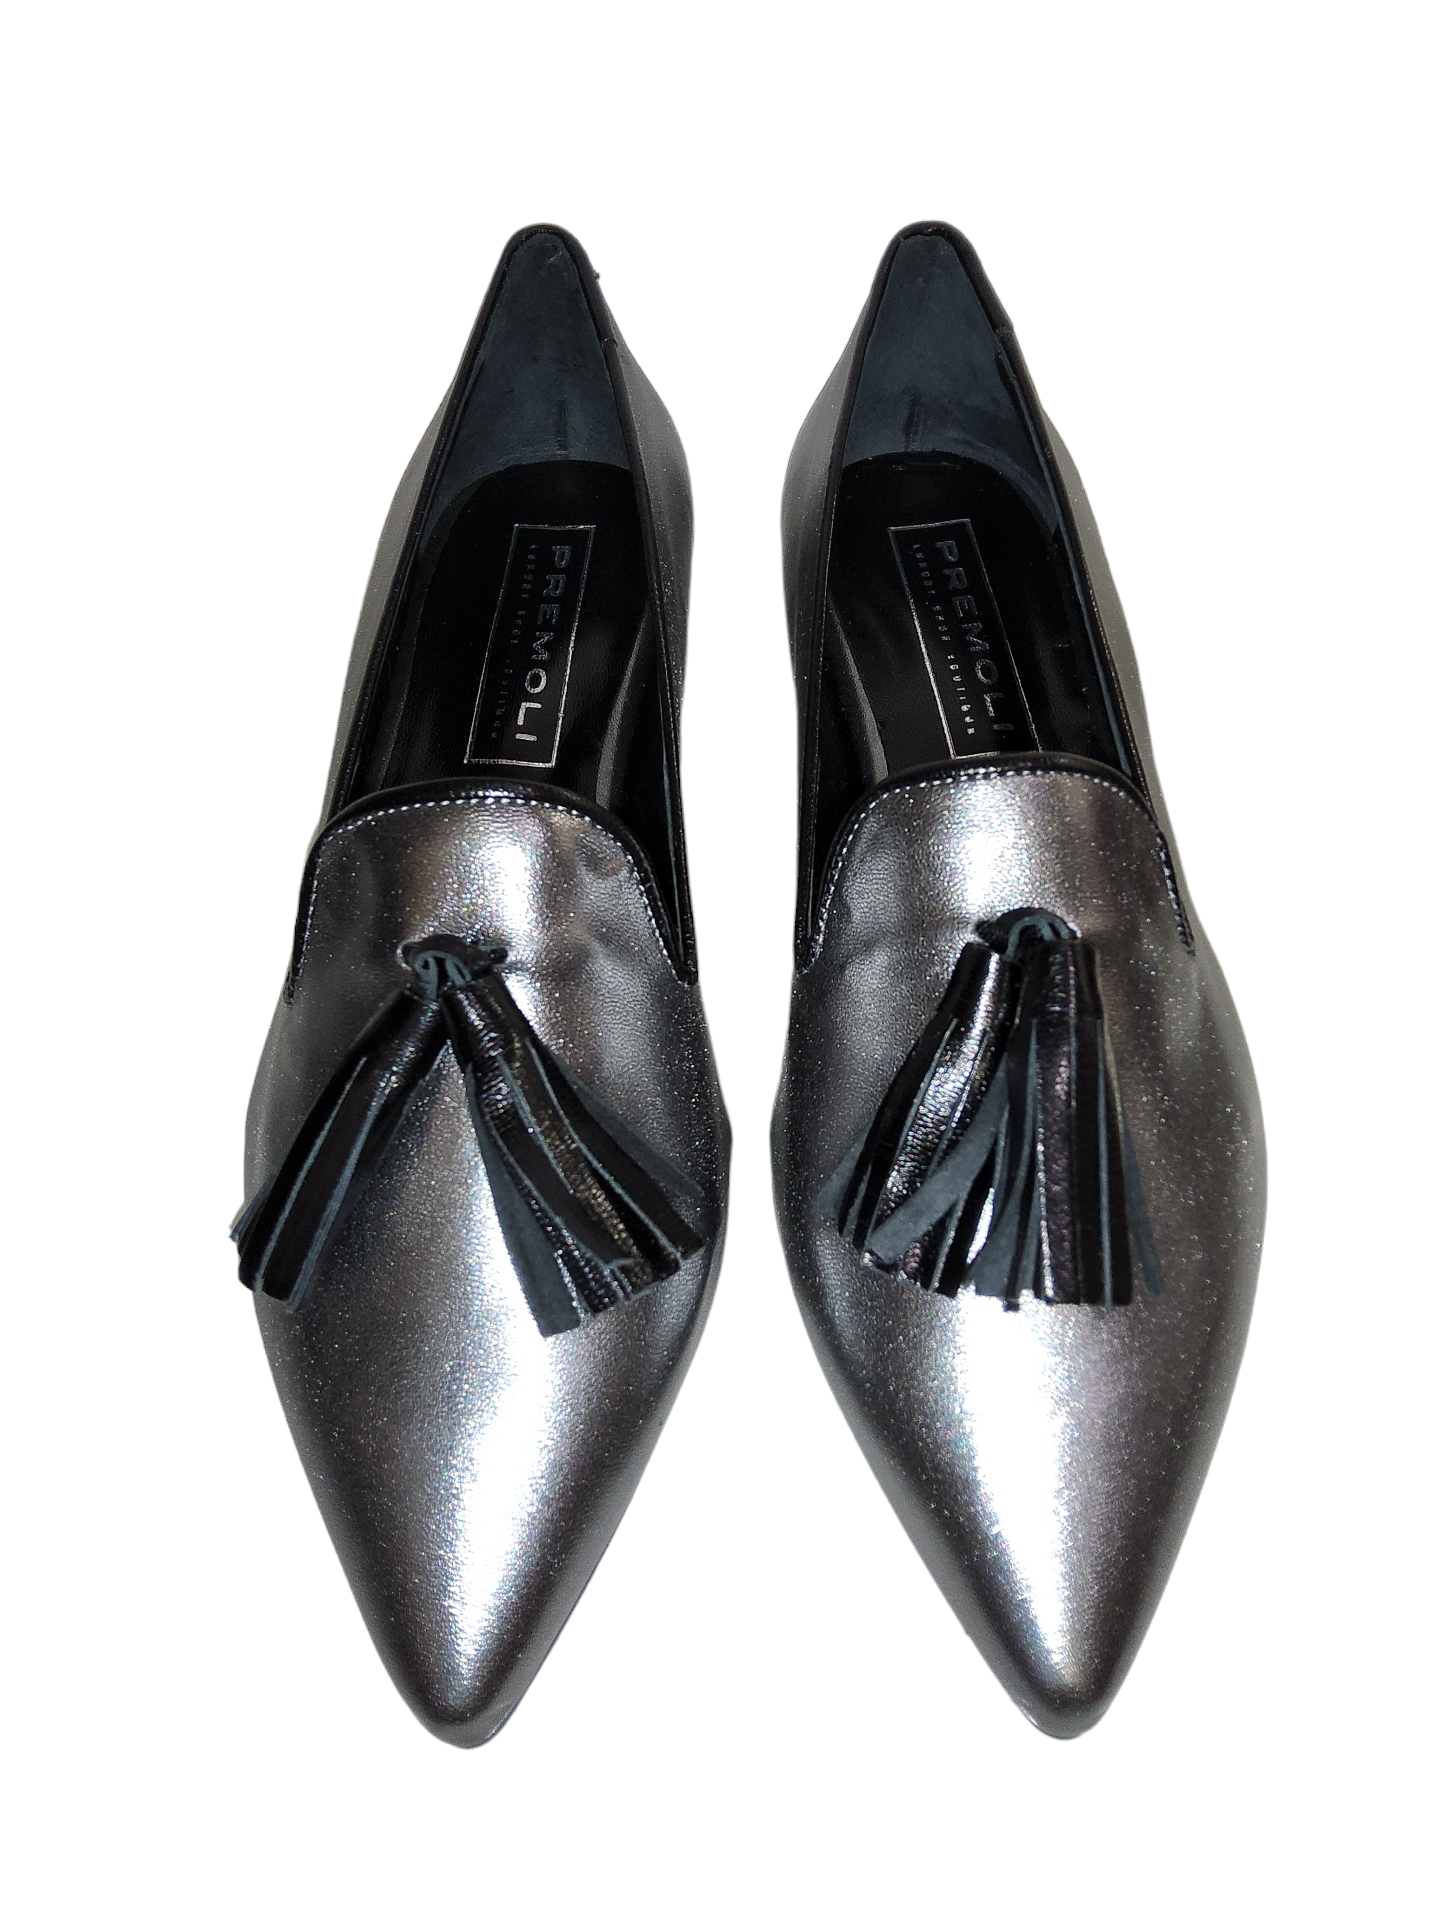 Metallic leather shoe